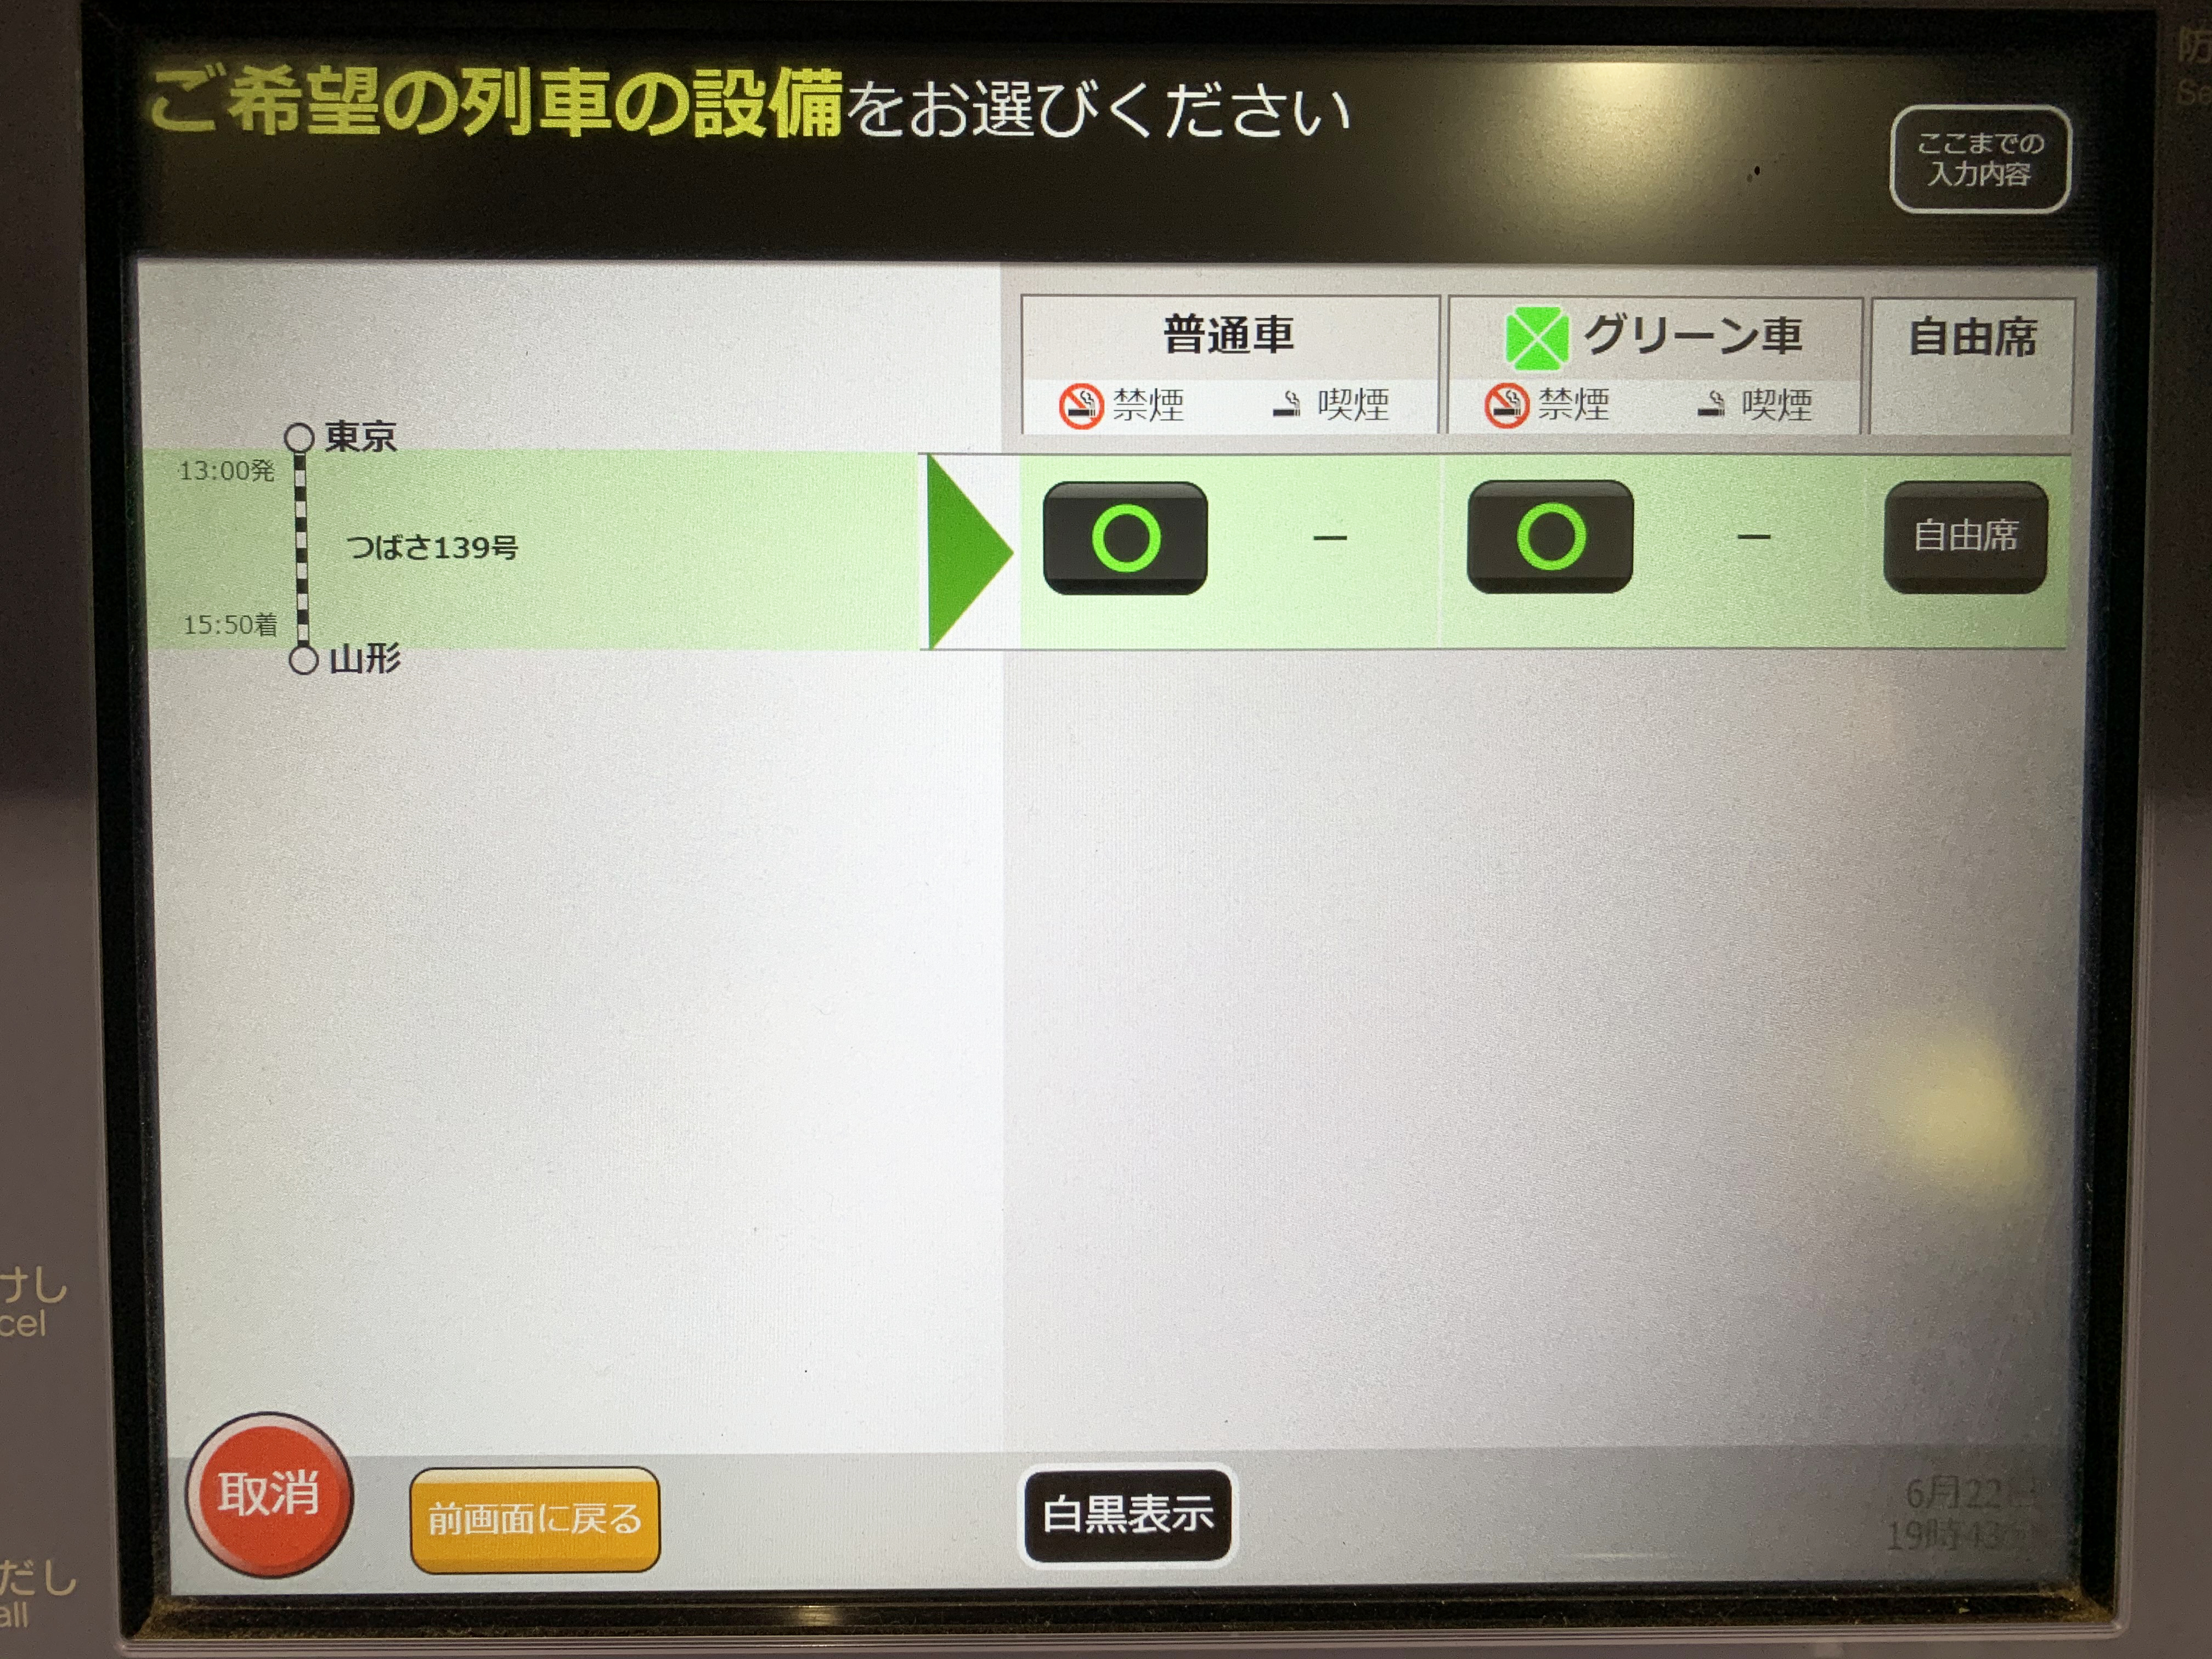 1枚4割引のJR東日本株主優待券を使えば、新幹線回数券を購入するよりも 